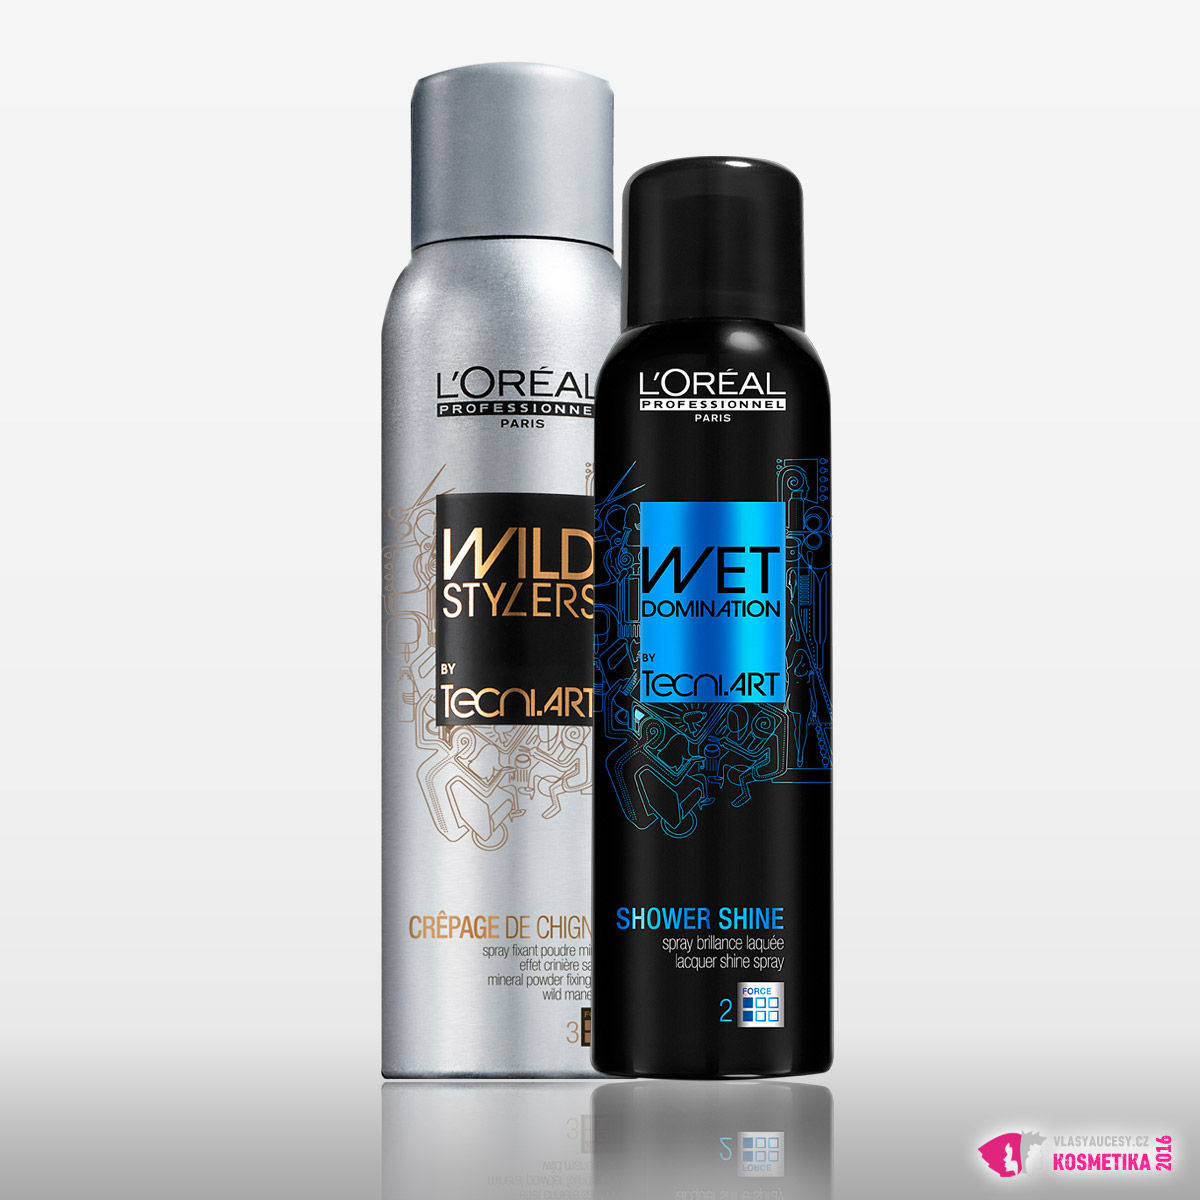 Použité produkty L’Oréal Professionnel: sprej pro definování textury Crepage de Chignon a sprej pro mokrý efekt vlasů Shower Shine